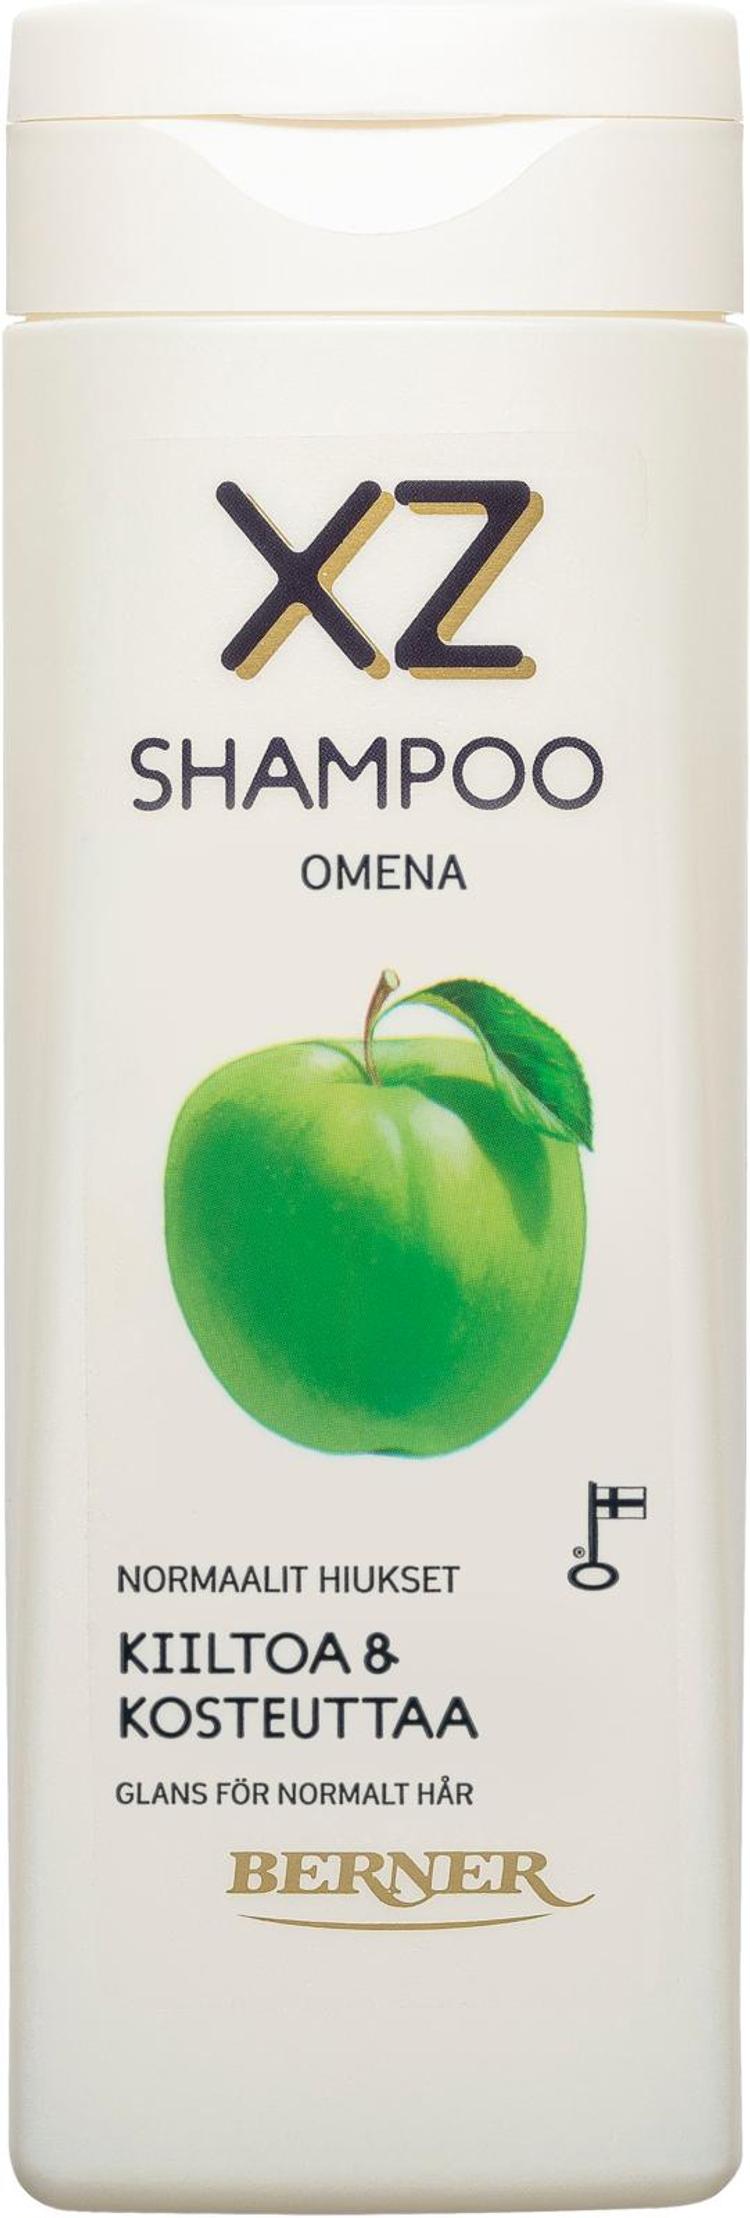 XZ 250ml Aito Omena shampoo